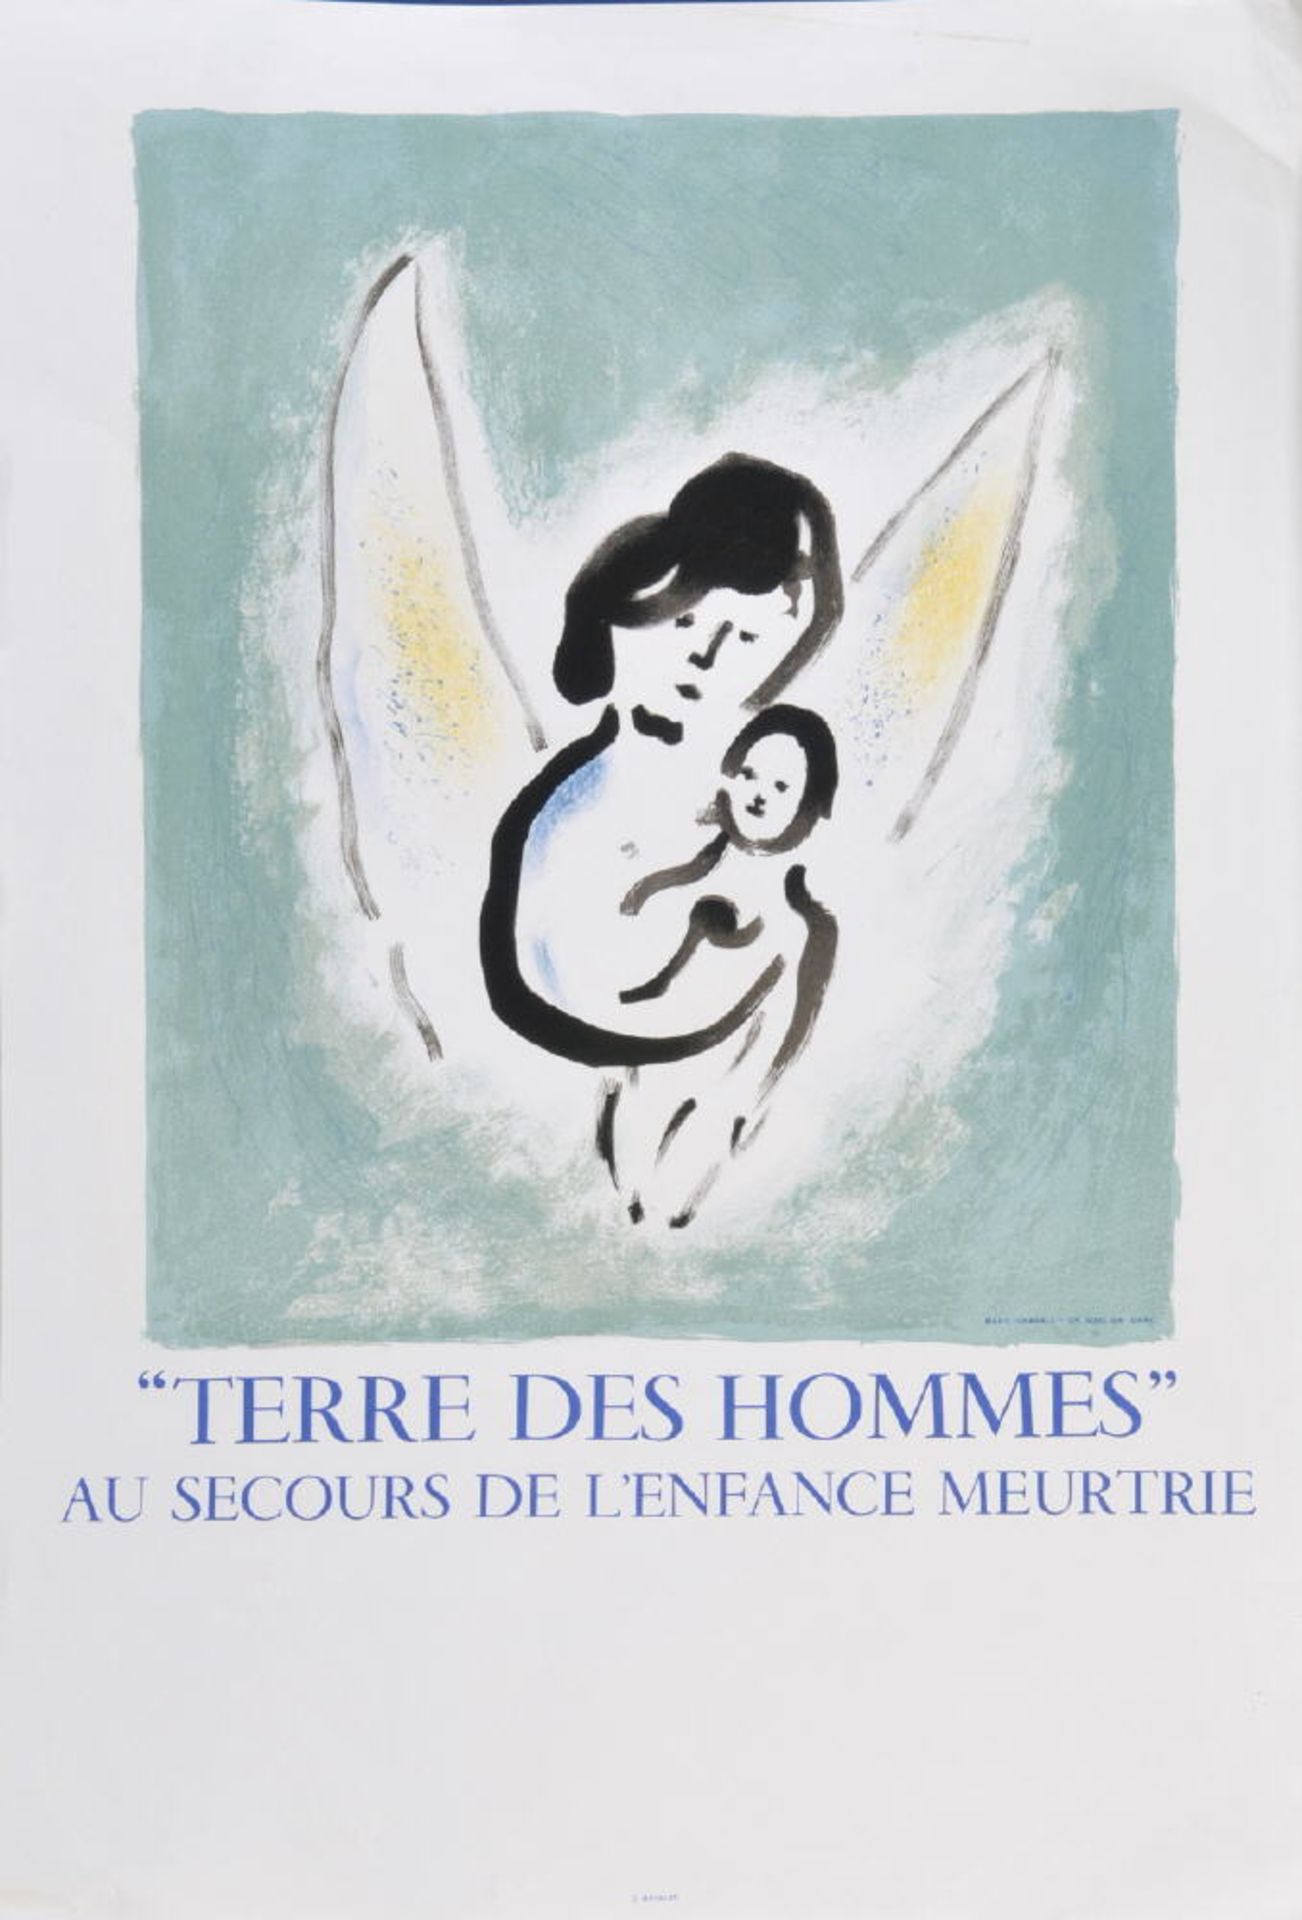 Chagall, Marc, 1887 Vitebsk - 1985 Saint-Paul-de-VenceFarblithographie, 47,5 x 40 cm, Plakat " Terre